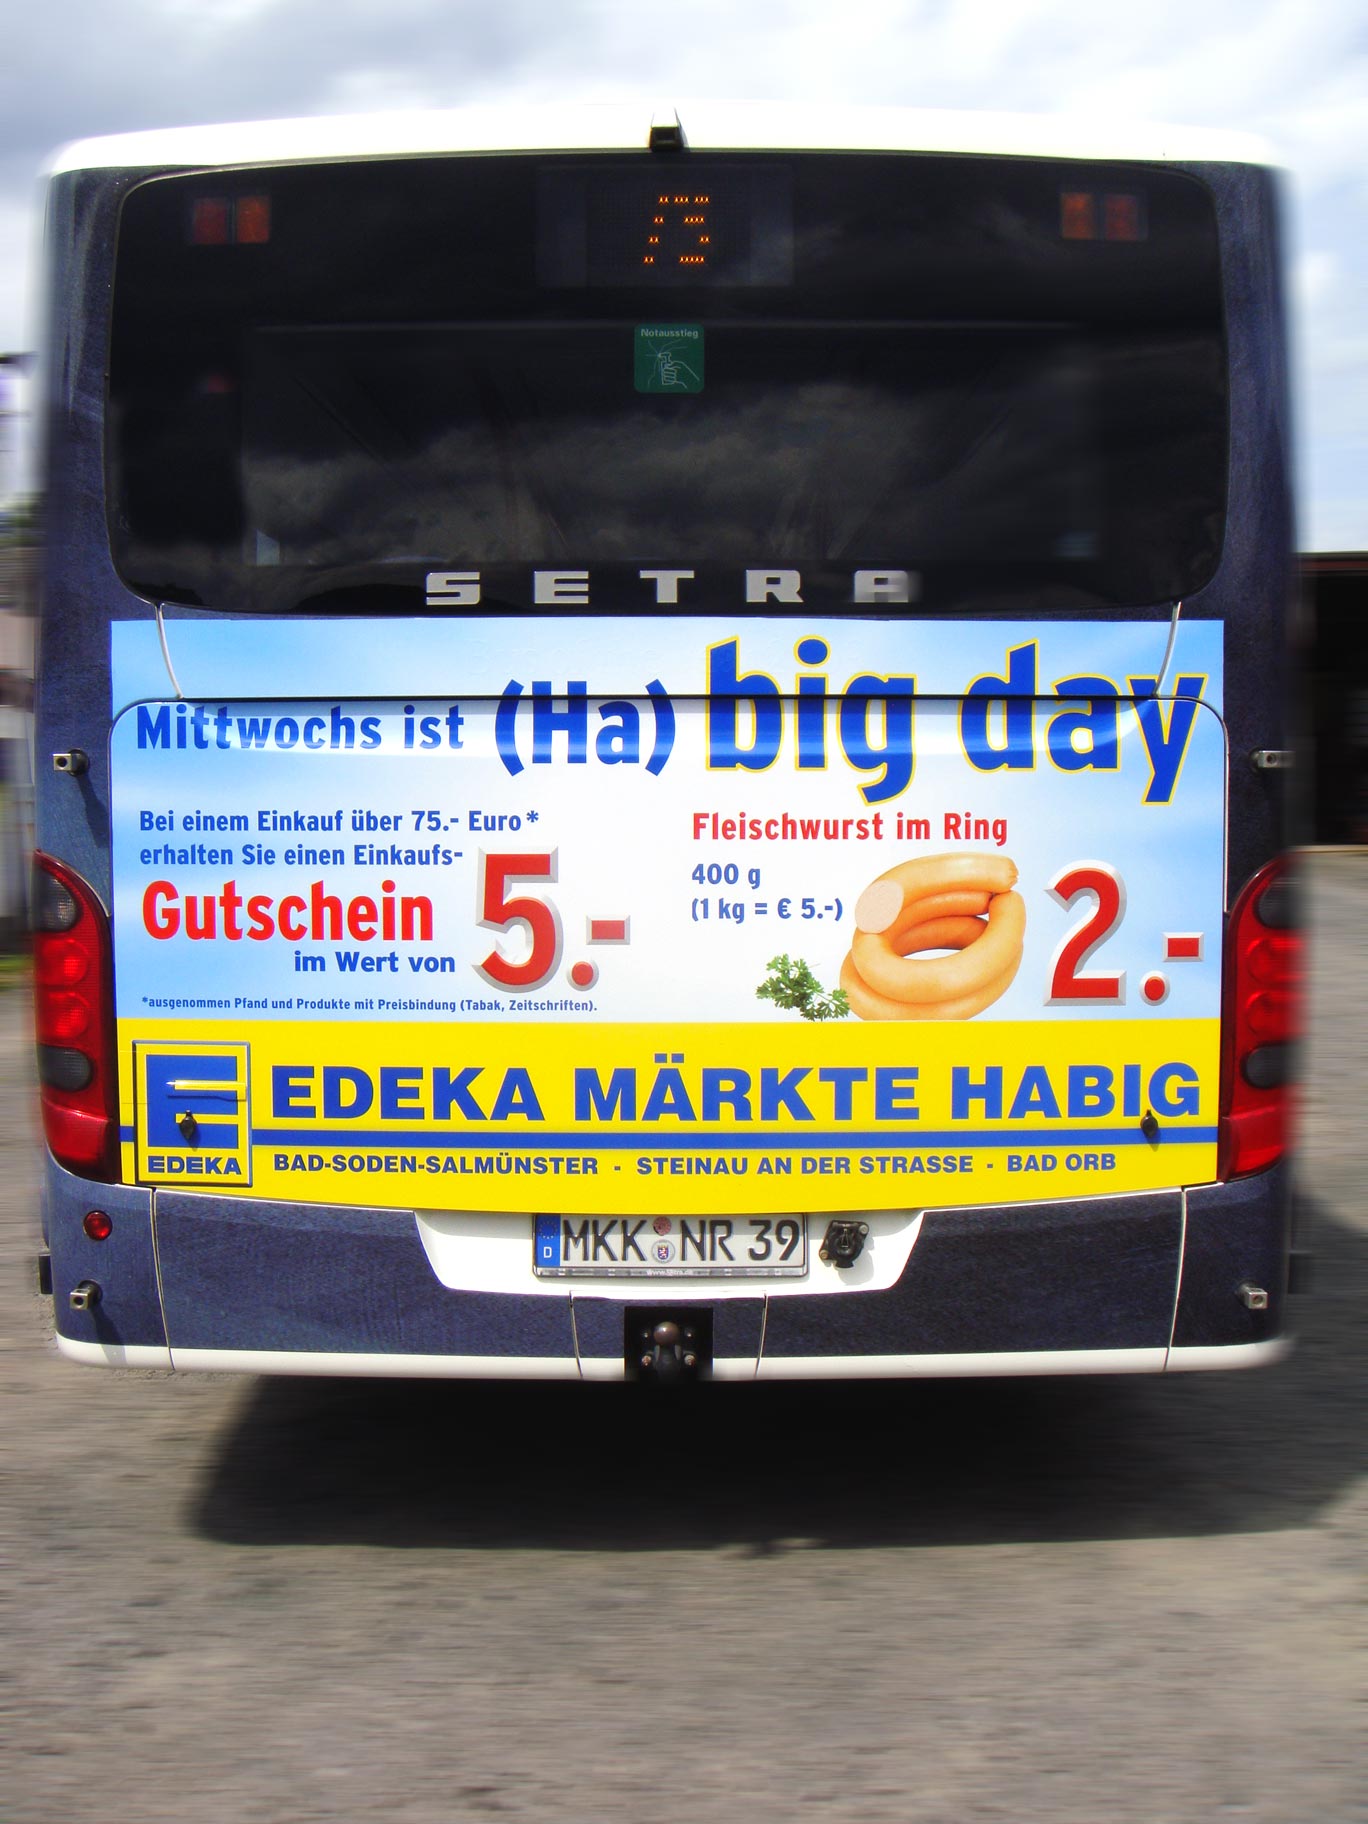 Buswerbung - Edeka - Heck